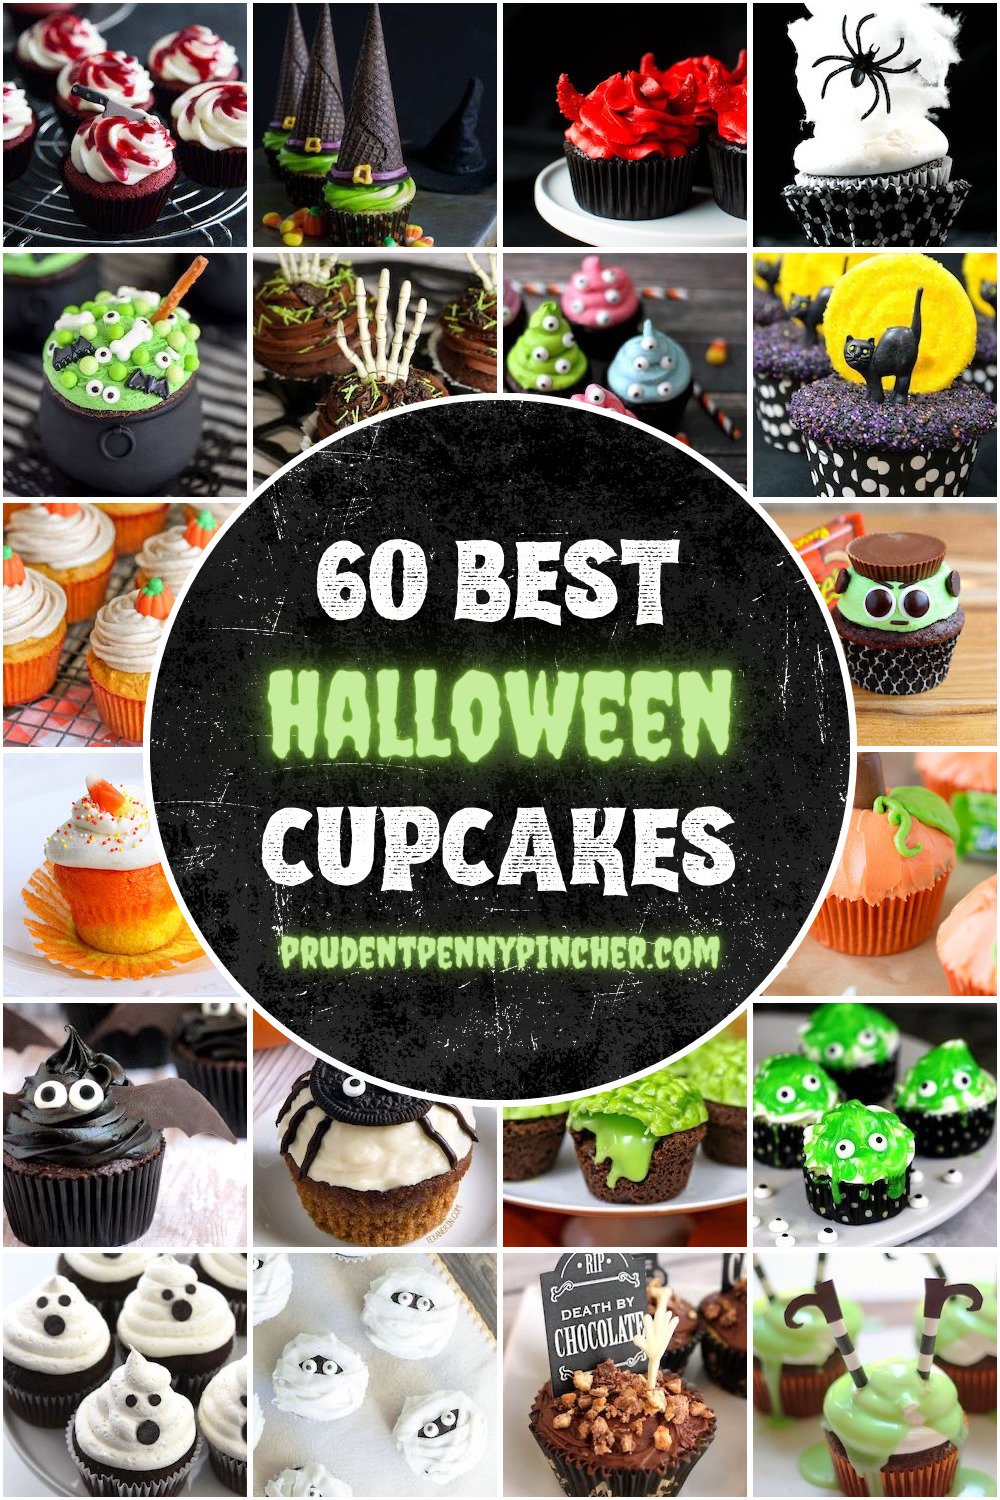 50 best halloween cupcakes